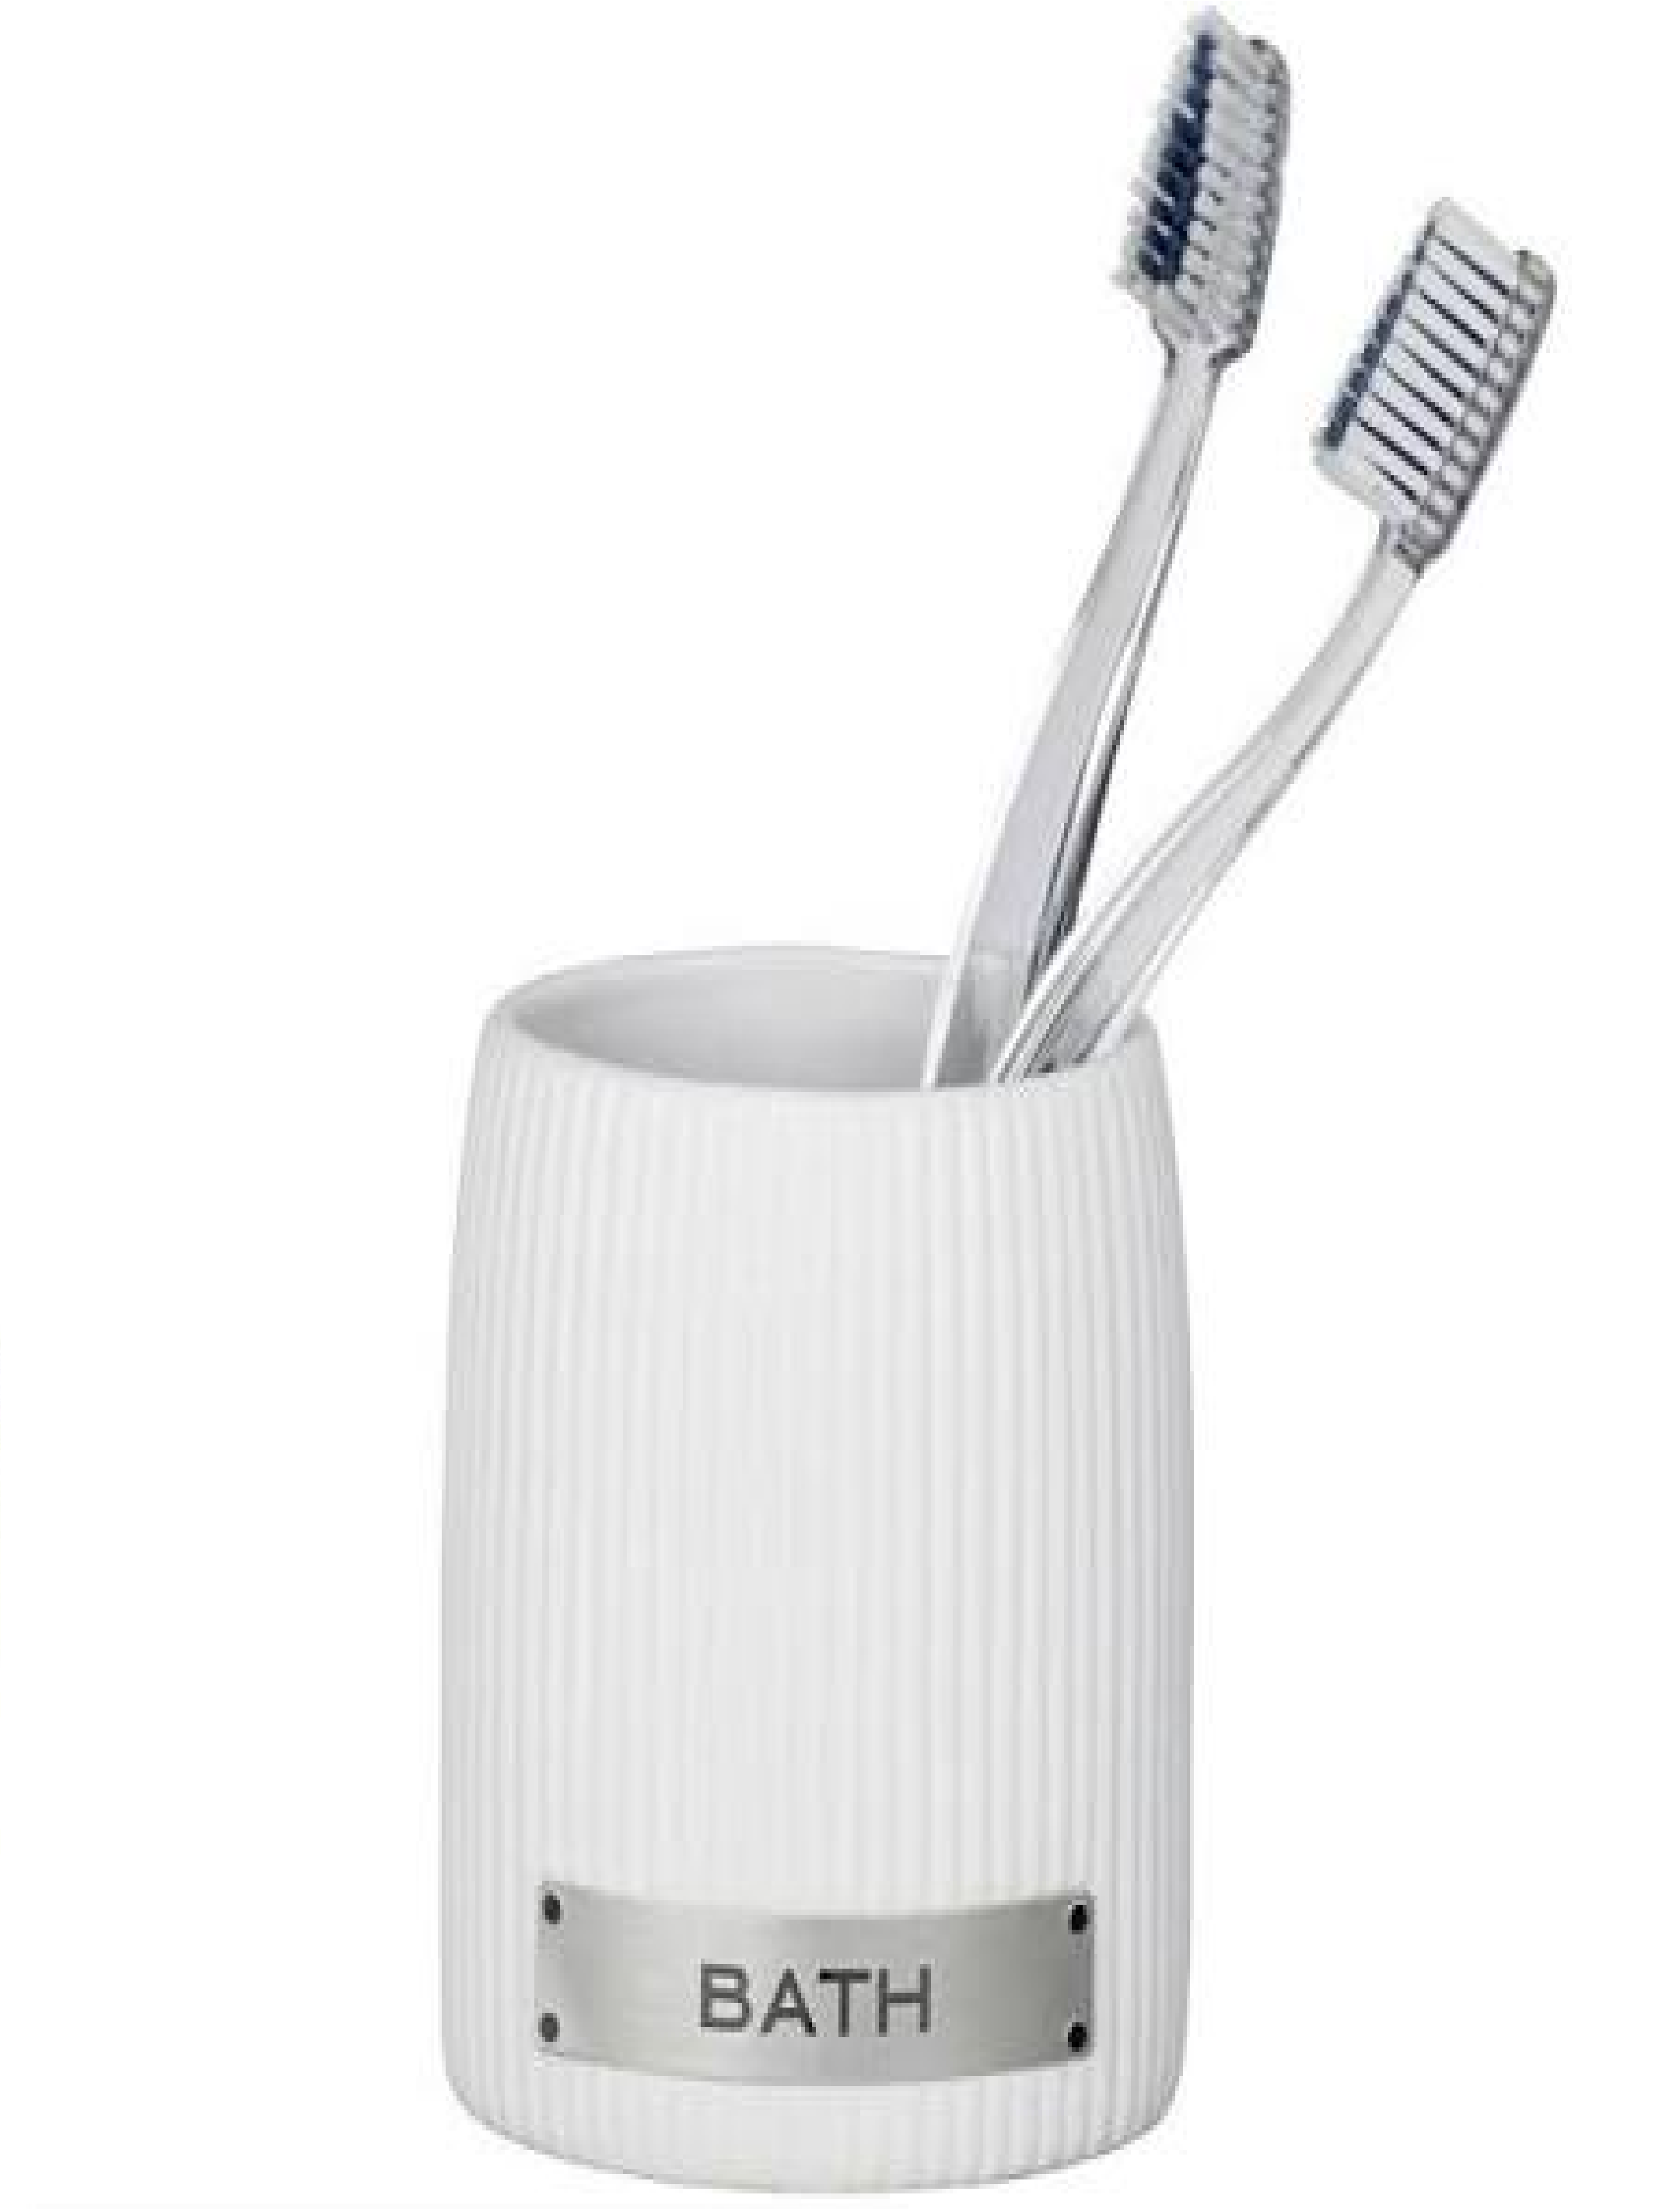 Bath Zahnputzbecher-/ Zahnbürstenhalter, für Zahnbürste und Zahnpasta, Keramik, 8,5 x 9,5 x 6,5 cm, Weiß